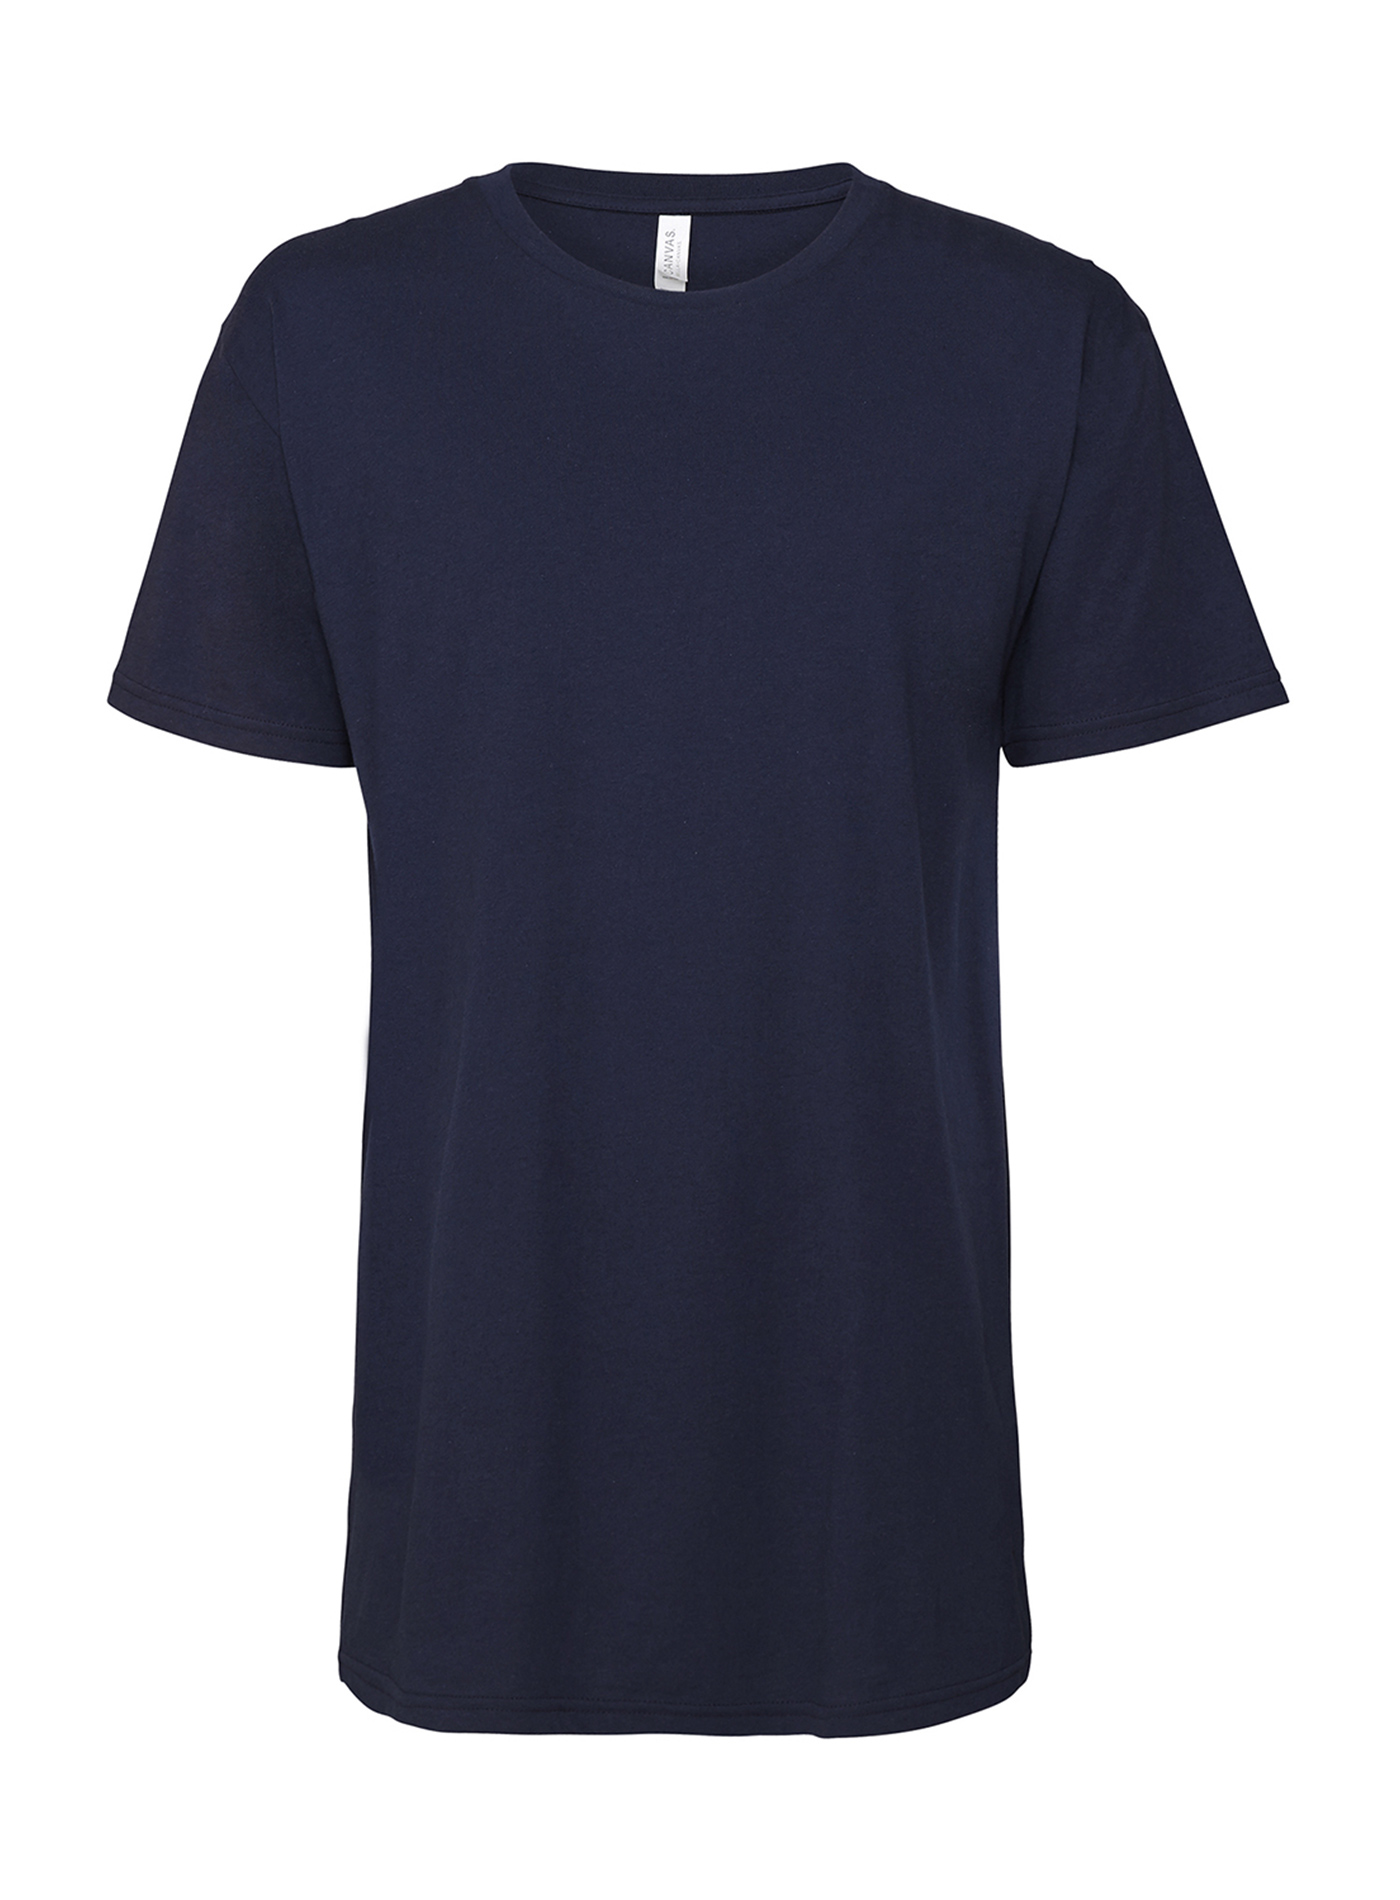 Pánské dlouhé tričko Urban - tmavě modrá S